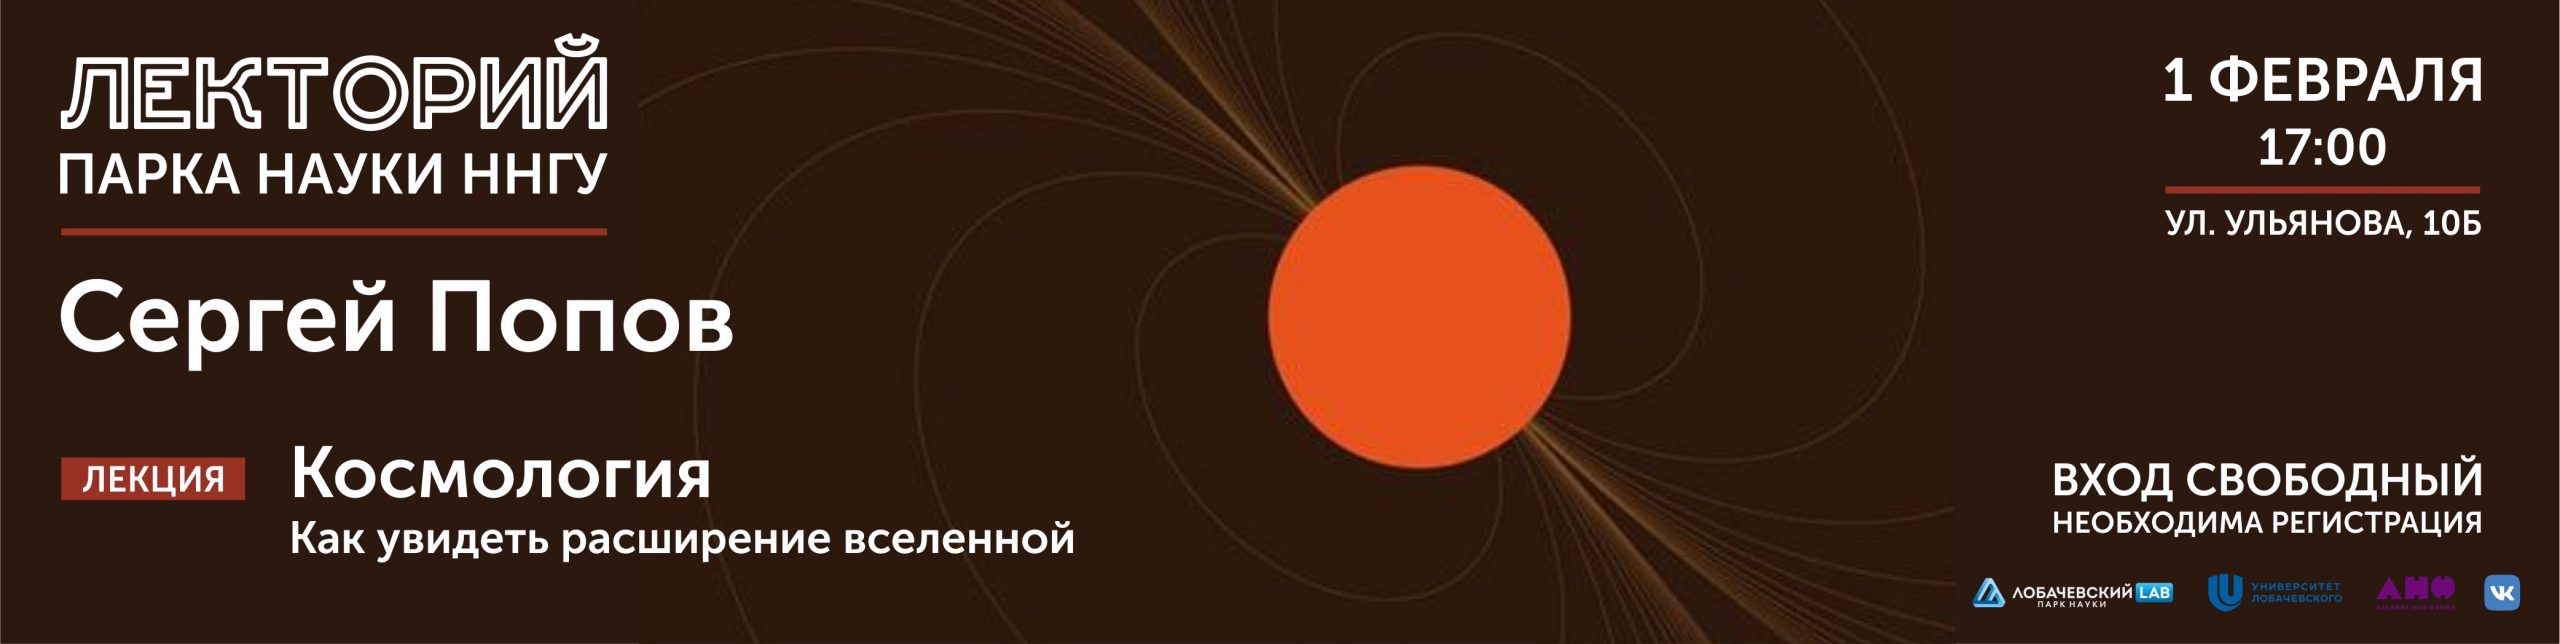 Лекция Сергея Попова «Расширение вселенной»